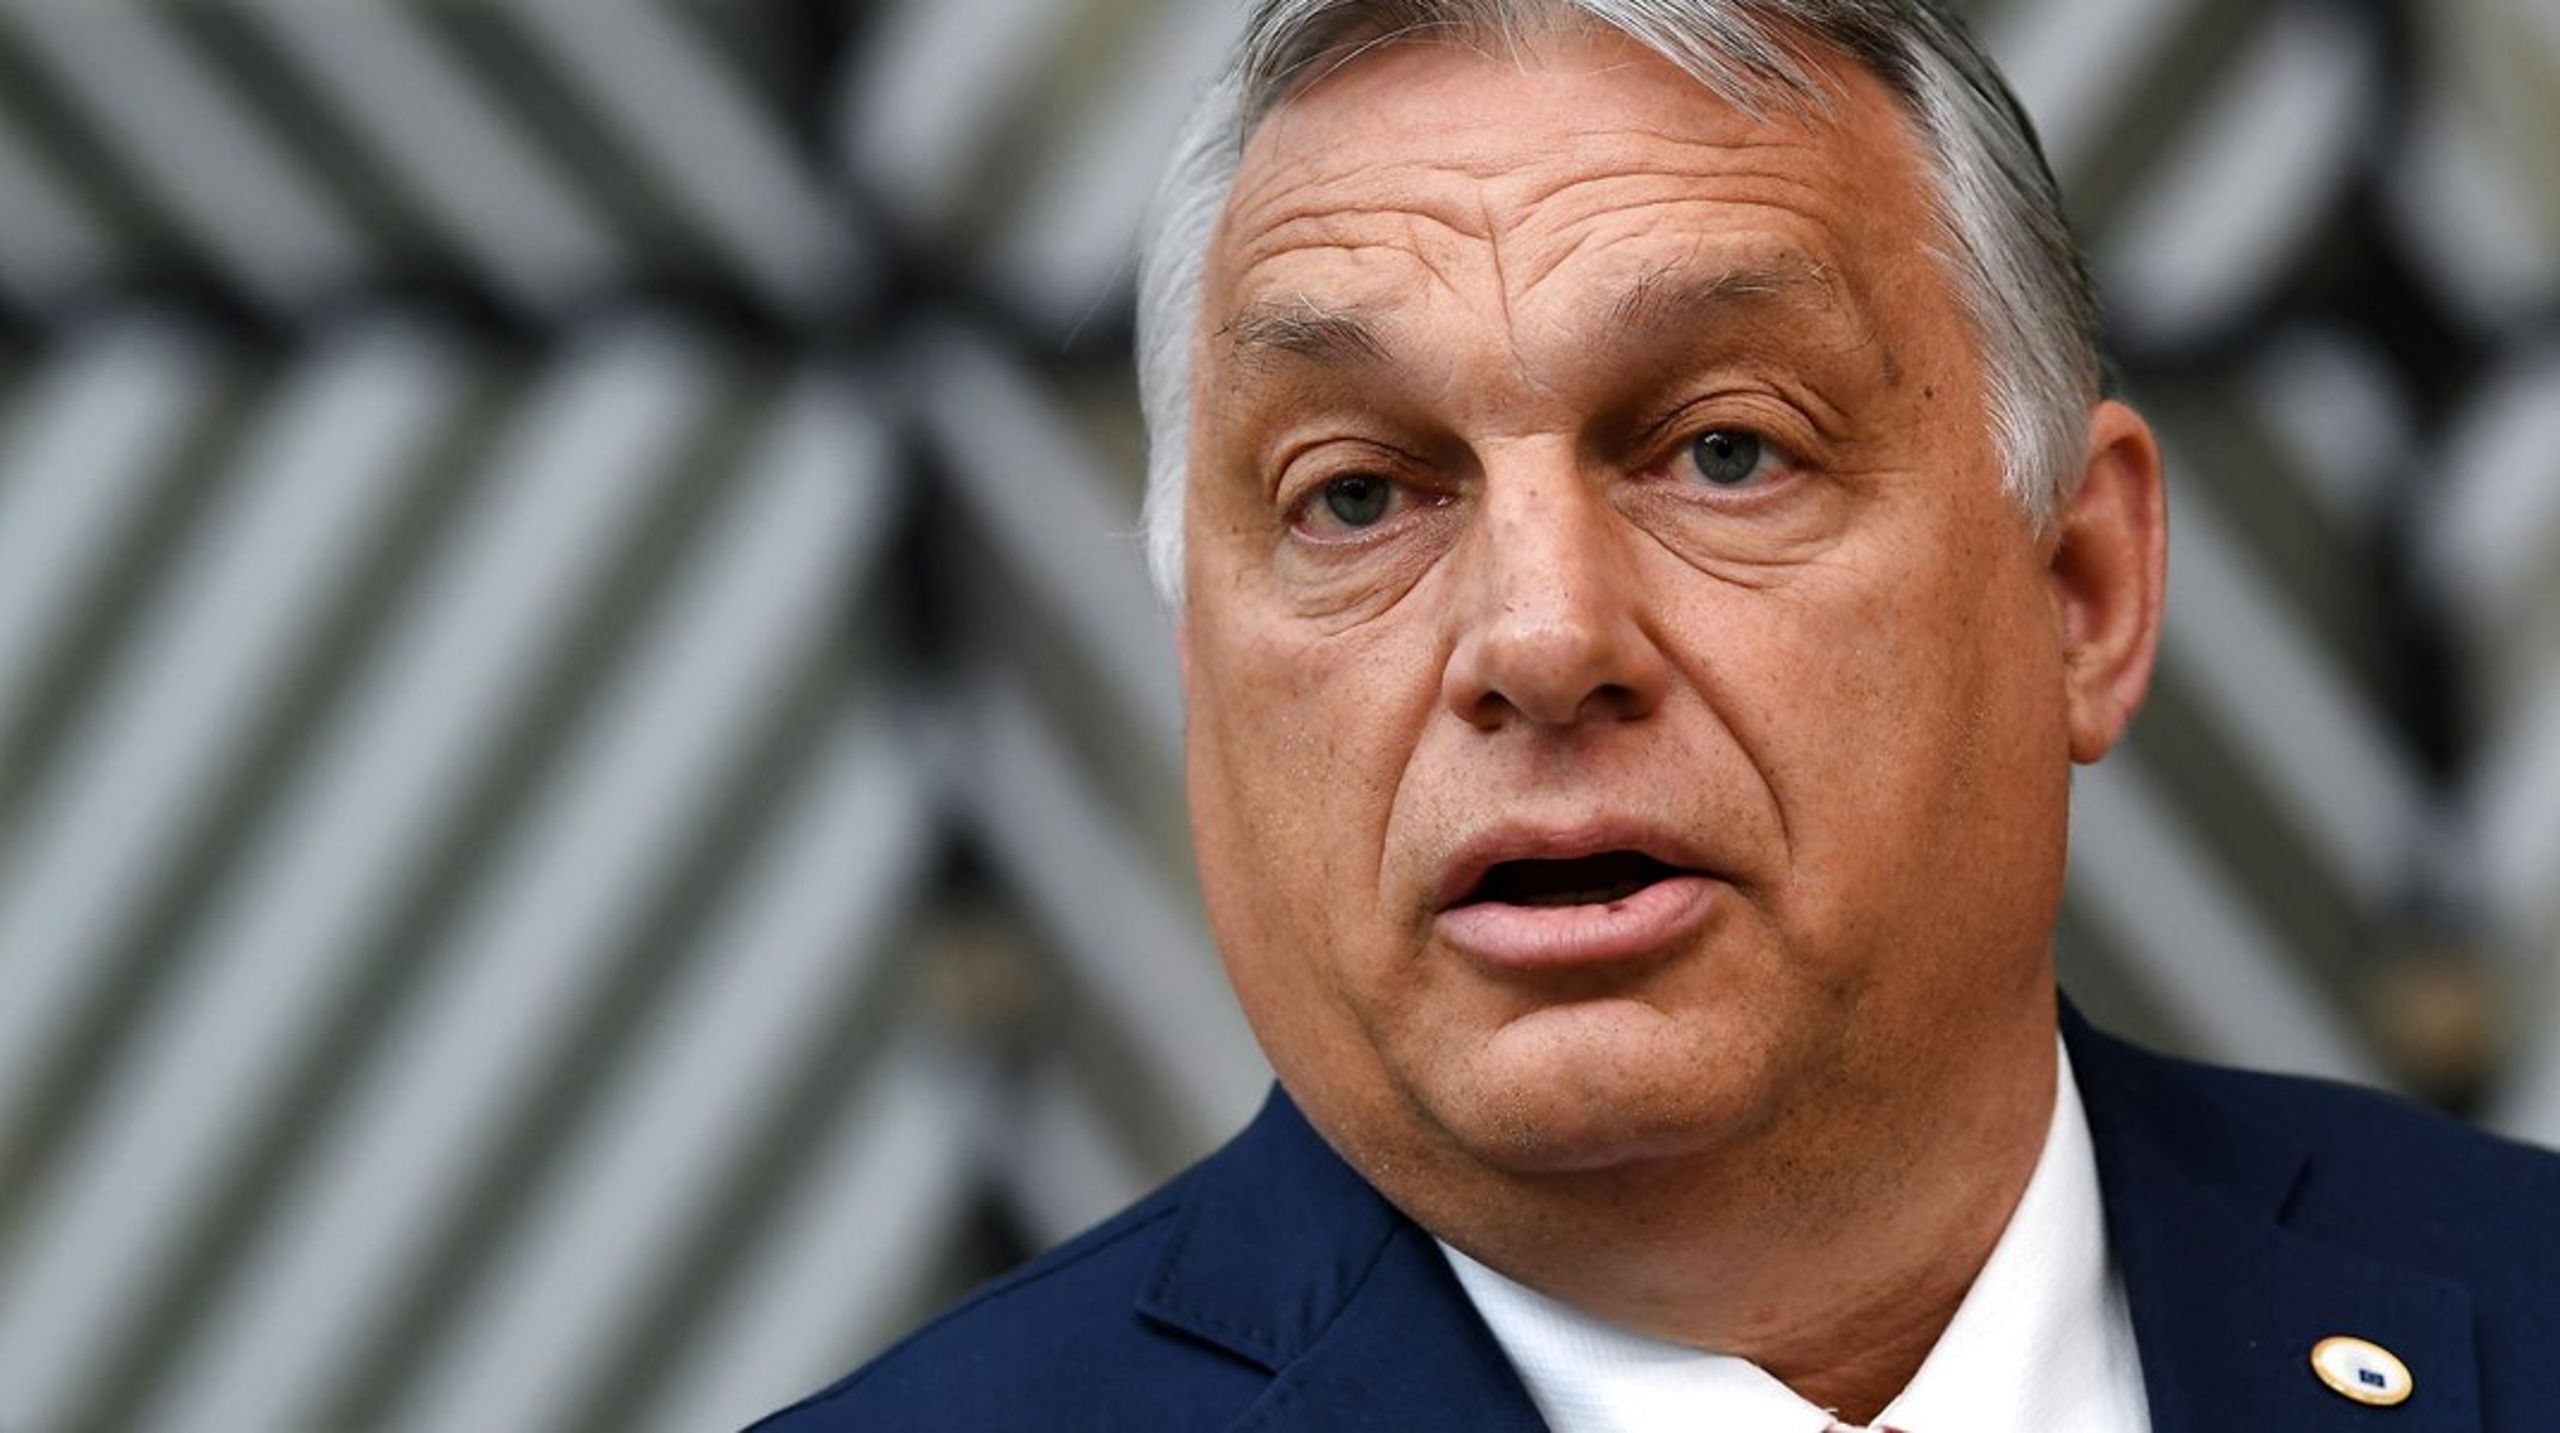 Viktor Orbán forsvarede en kontroversiel ny lov med, at det handler om forældres ret til at bestemme over deres børn seksualundervisning.